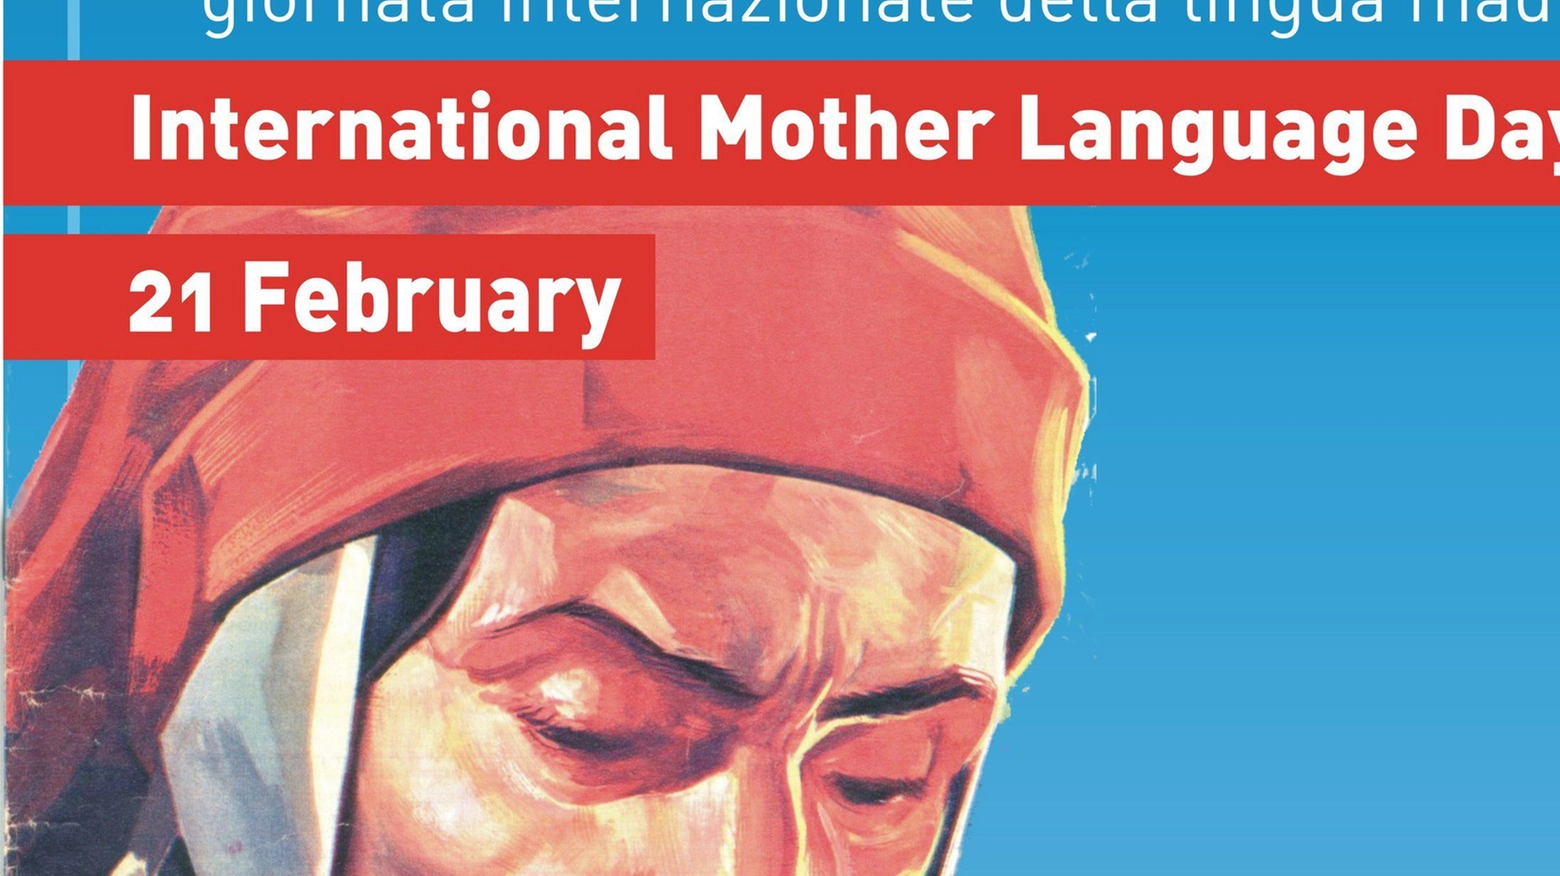 La fumettoteca rende omaggio  a Dante Alighieri  nella Giornata internazionale della lingua madre